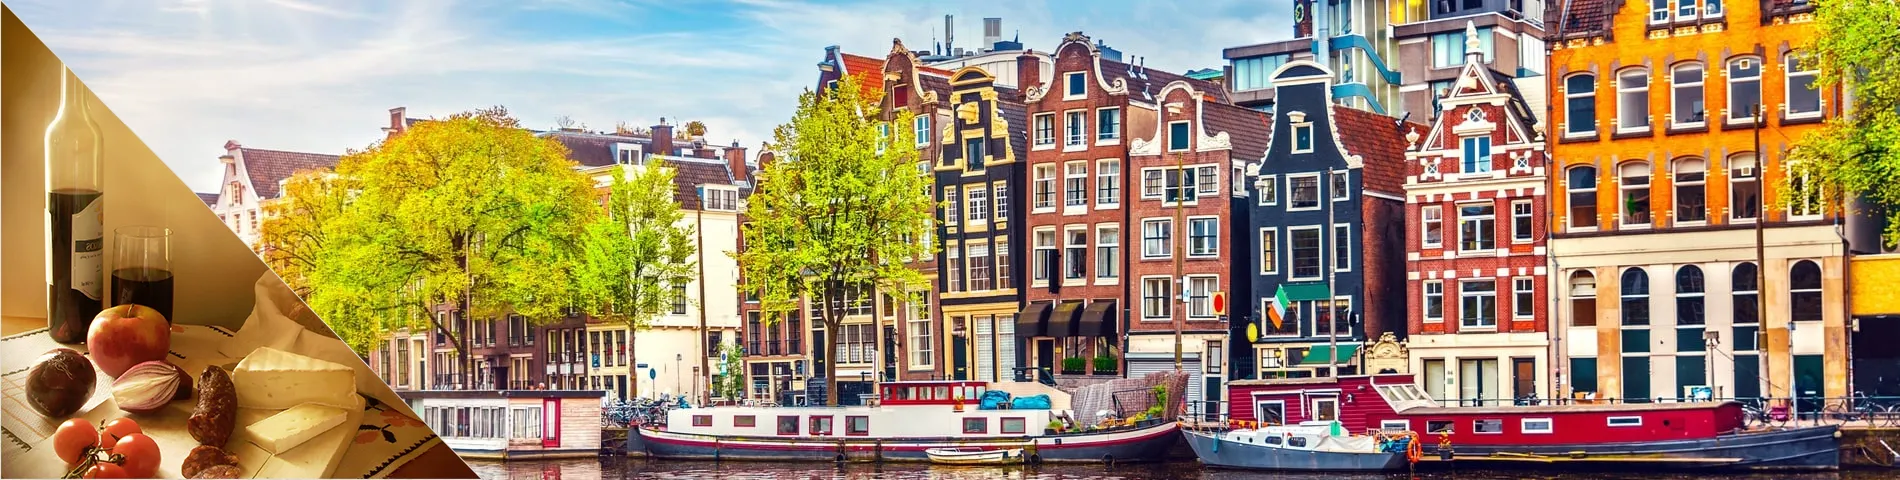 أمستردام - (دورة الثقافة مجتمعة)